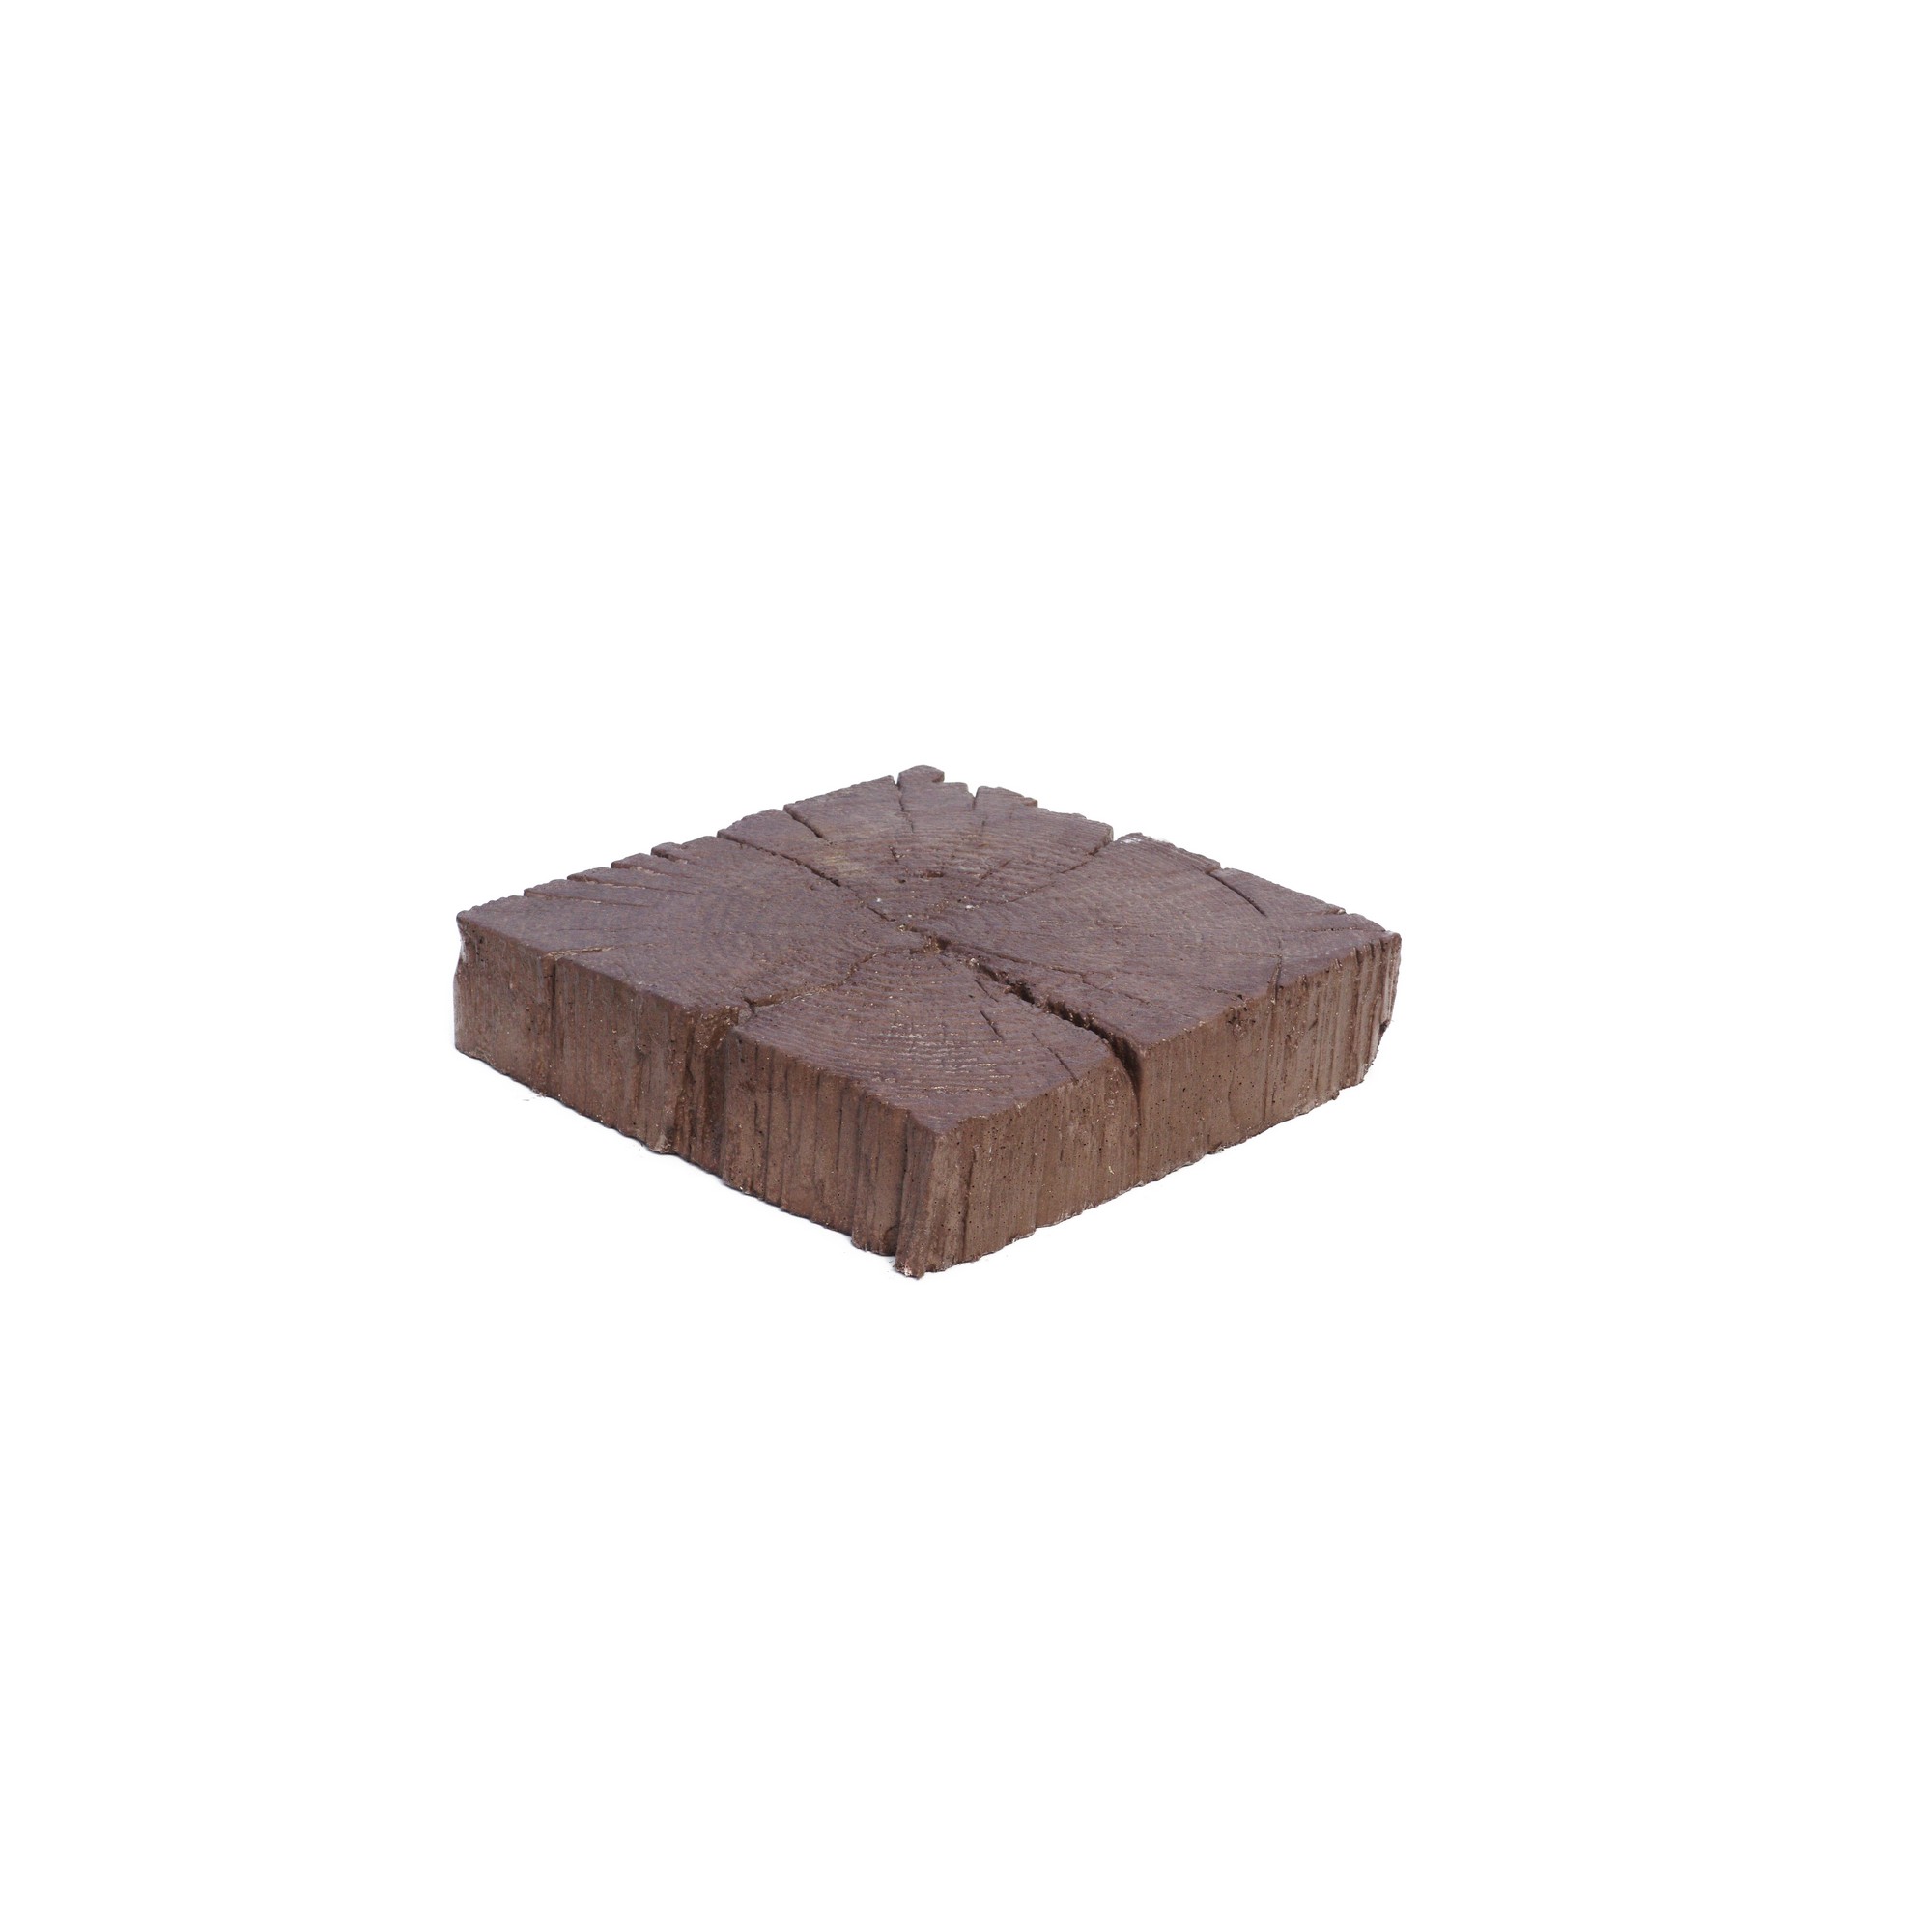 Dlažba betonová Presbeton BARK 3 reliéfní trám hnědá 225×225×50 mm